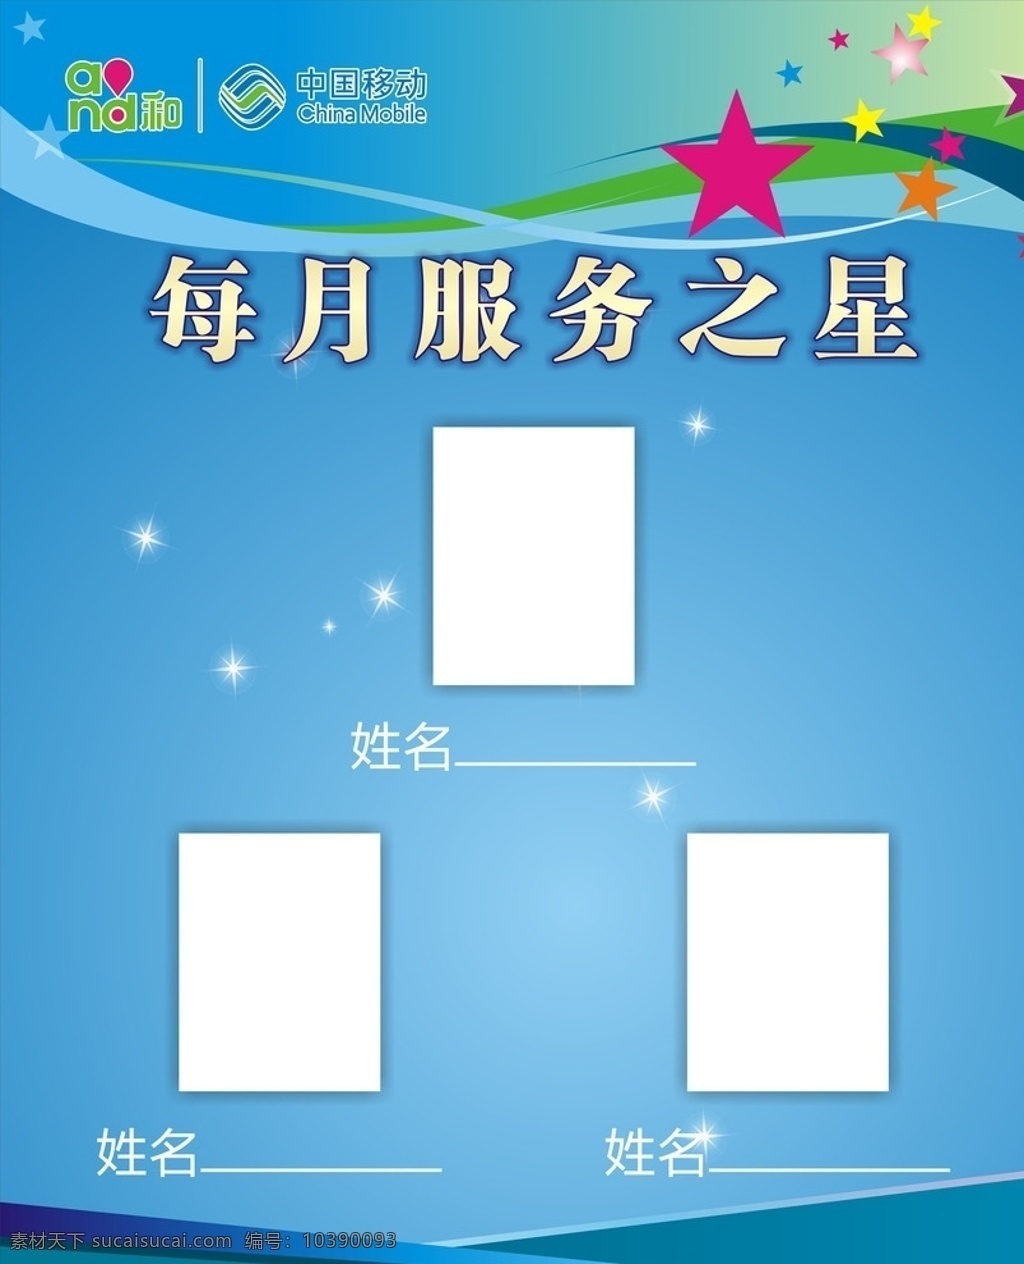 中国移动 每月 服务 之星 海报